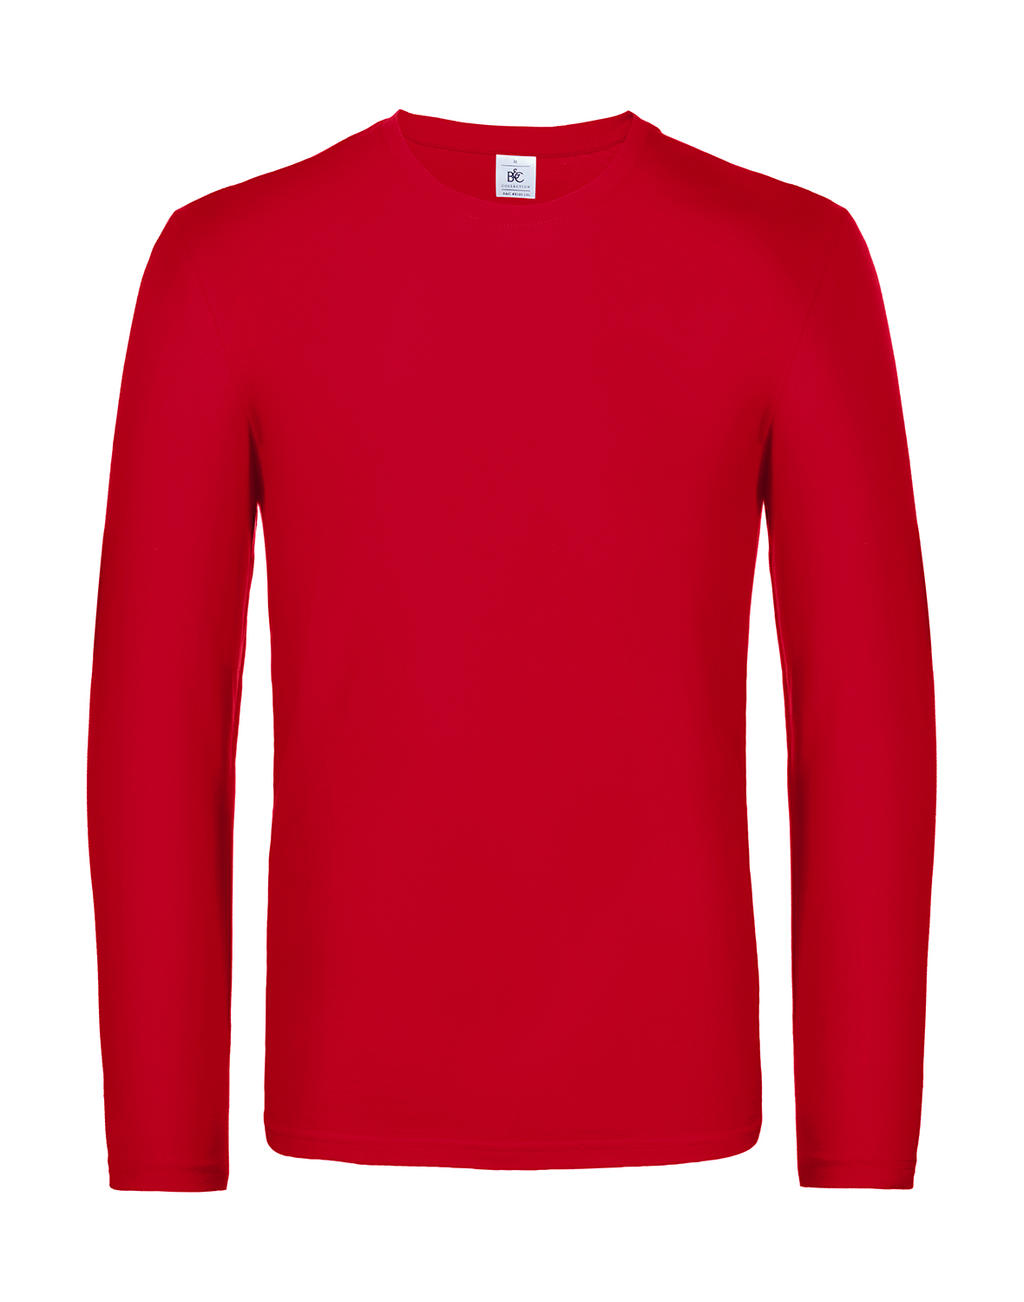 Tričko s dlhými rukávmi #E190 - red